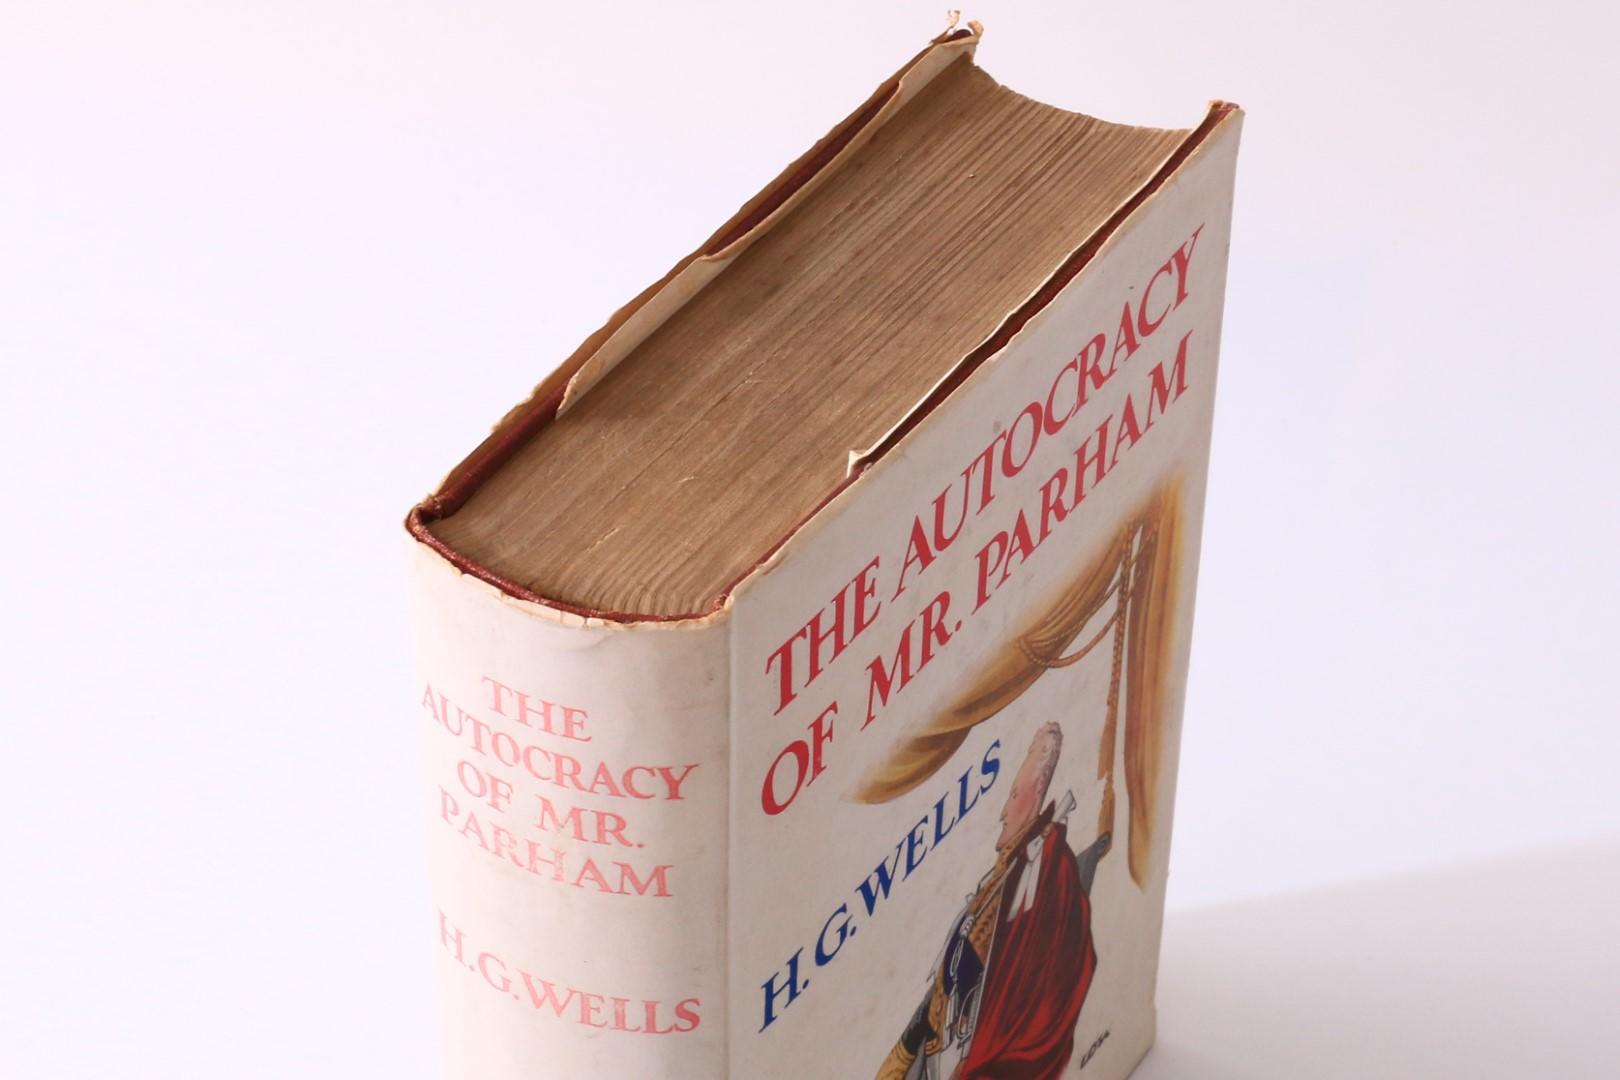 H.G. Wells - The Autocracy of Mr. Parham - Heinemann, 1930, Signed First Edition.